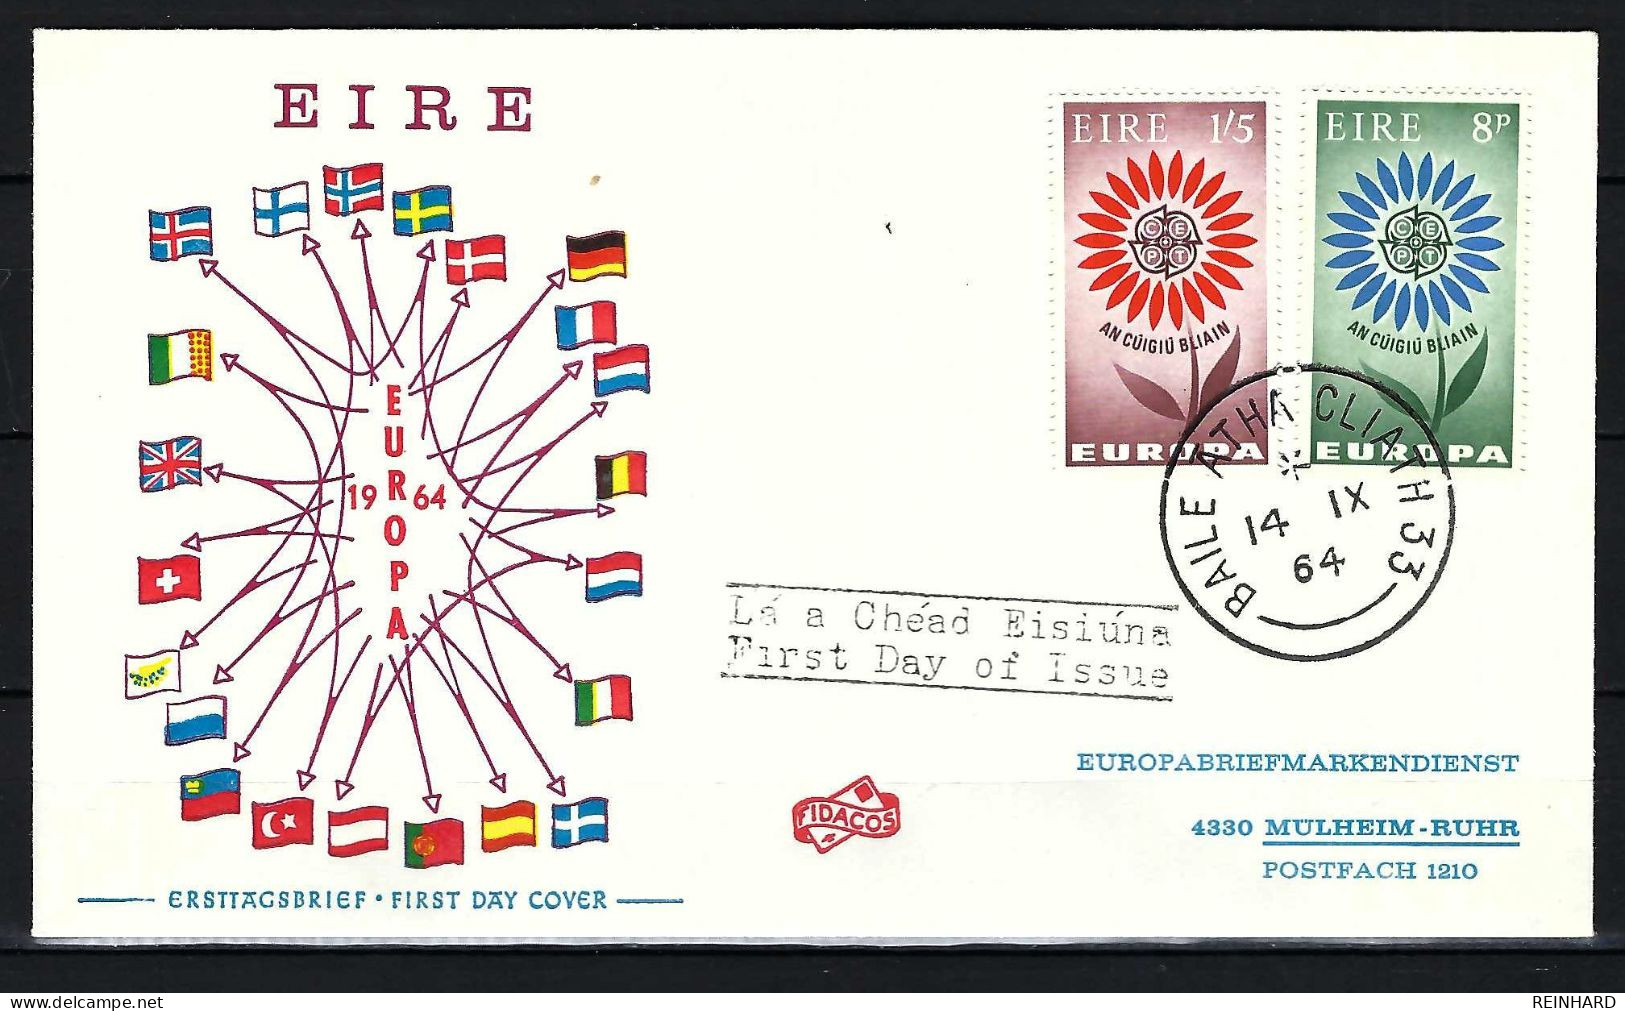 IRLAND FDC Mit Komplettsatz Europamarken 1964 - Siehe Bild - FDC